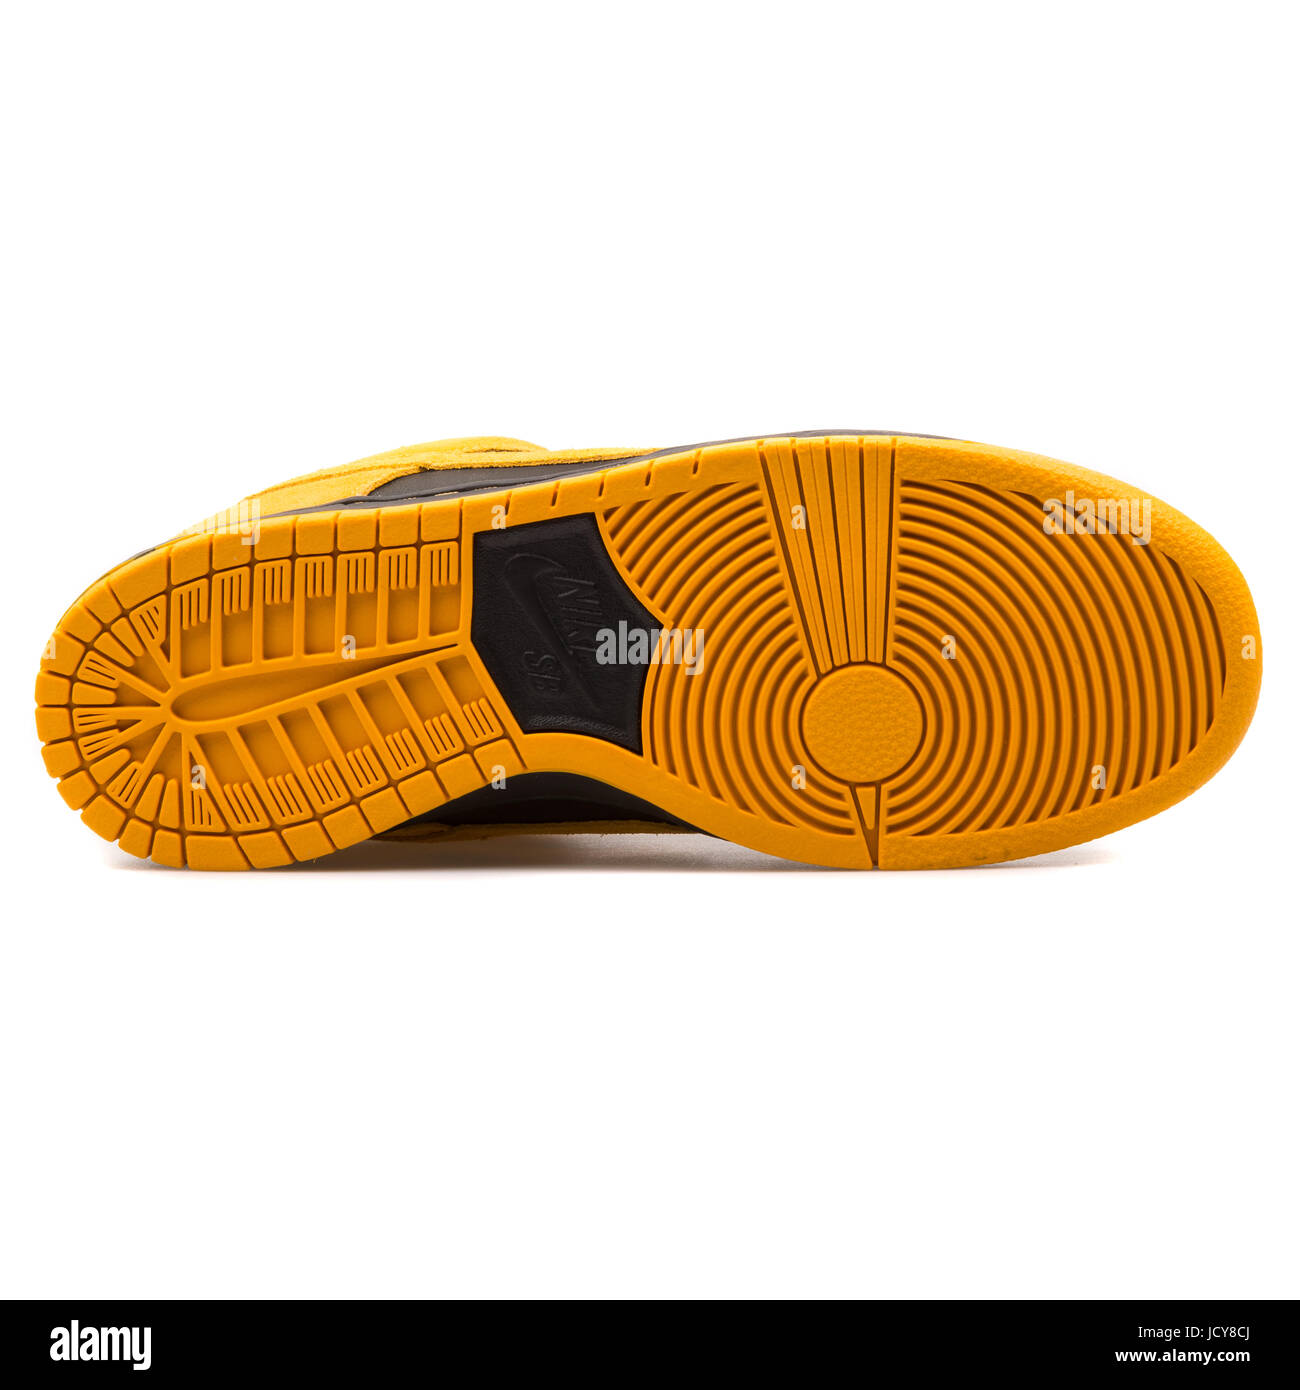 Nike Dunk Low Pro SB or jaune et noir - chaussures de skate hommes  304292-706 Photo Stock - Alamy